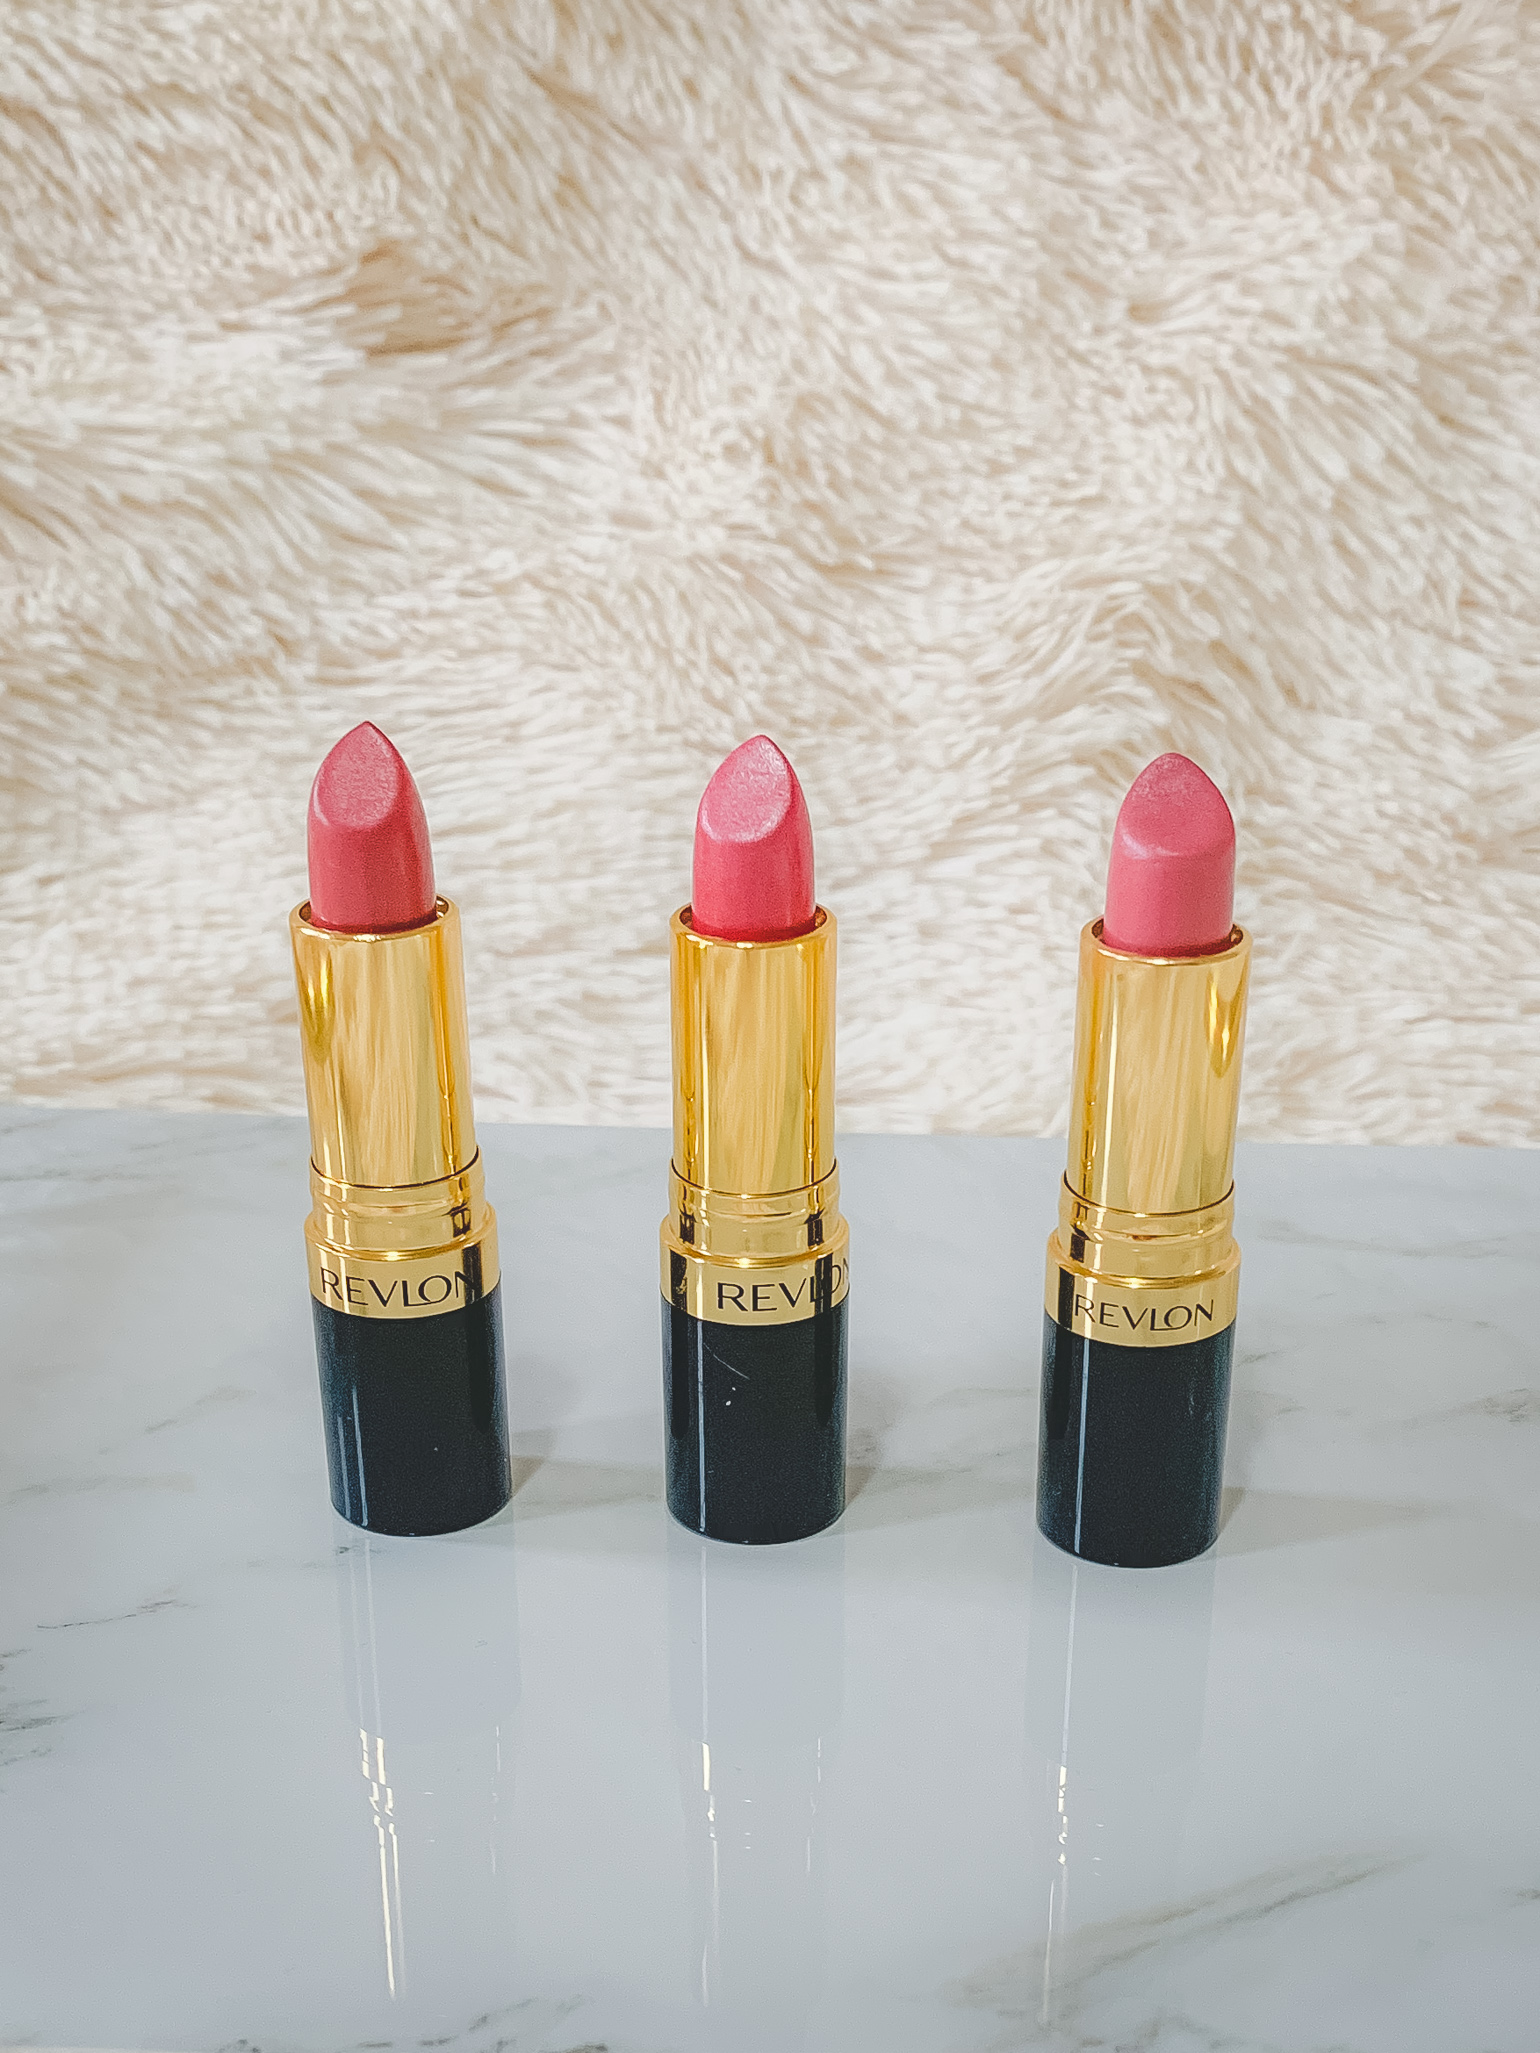 Revlon Lipsticks in Dark, Medium, & Light Shades of Pink